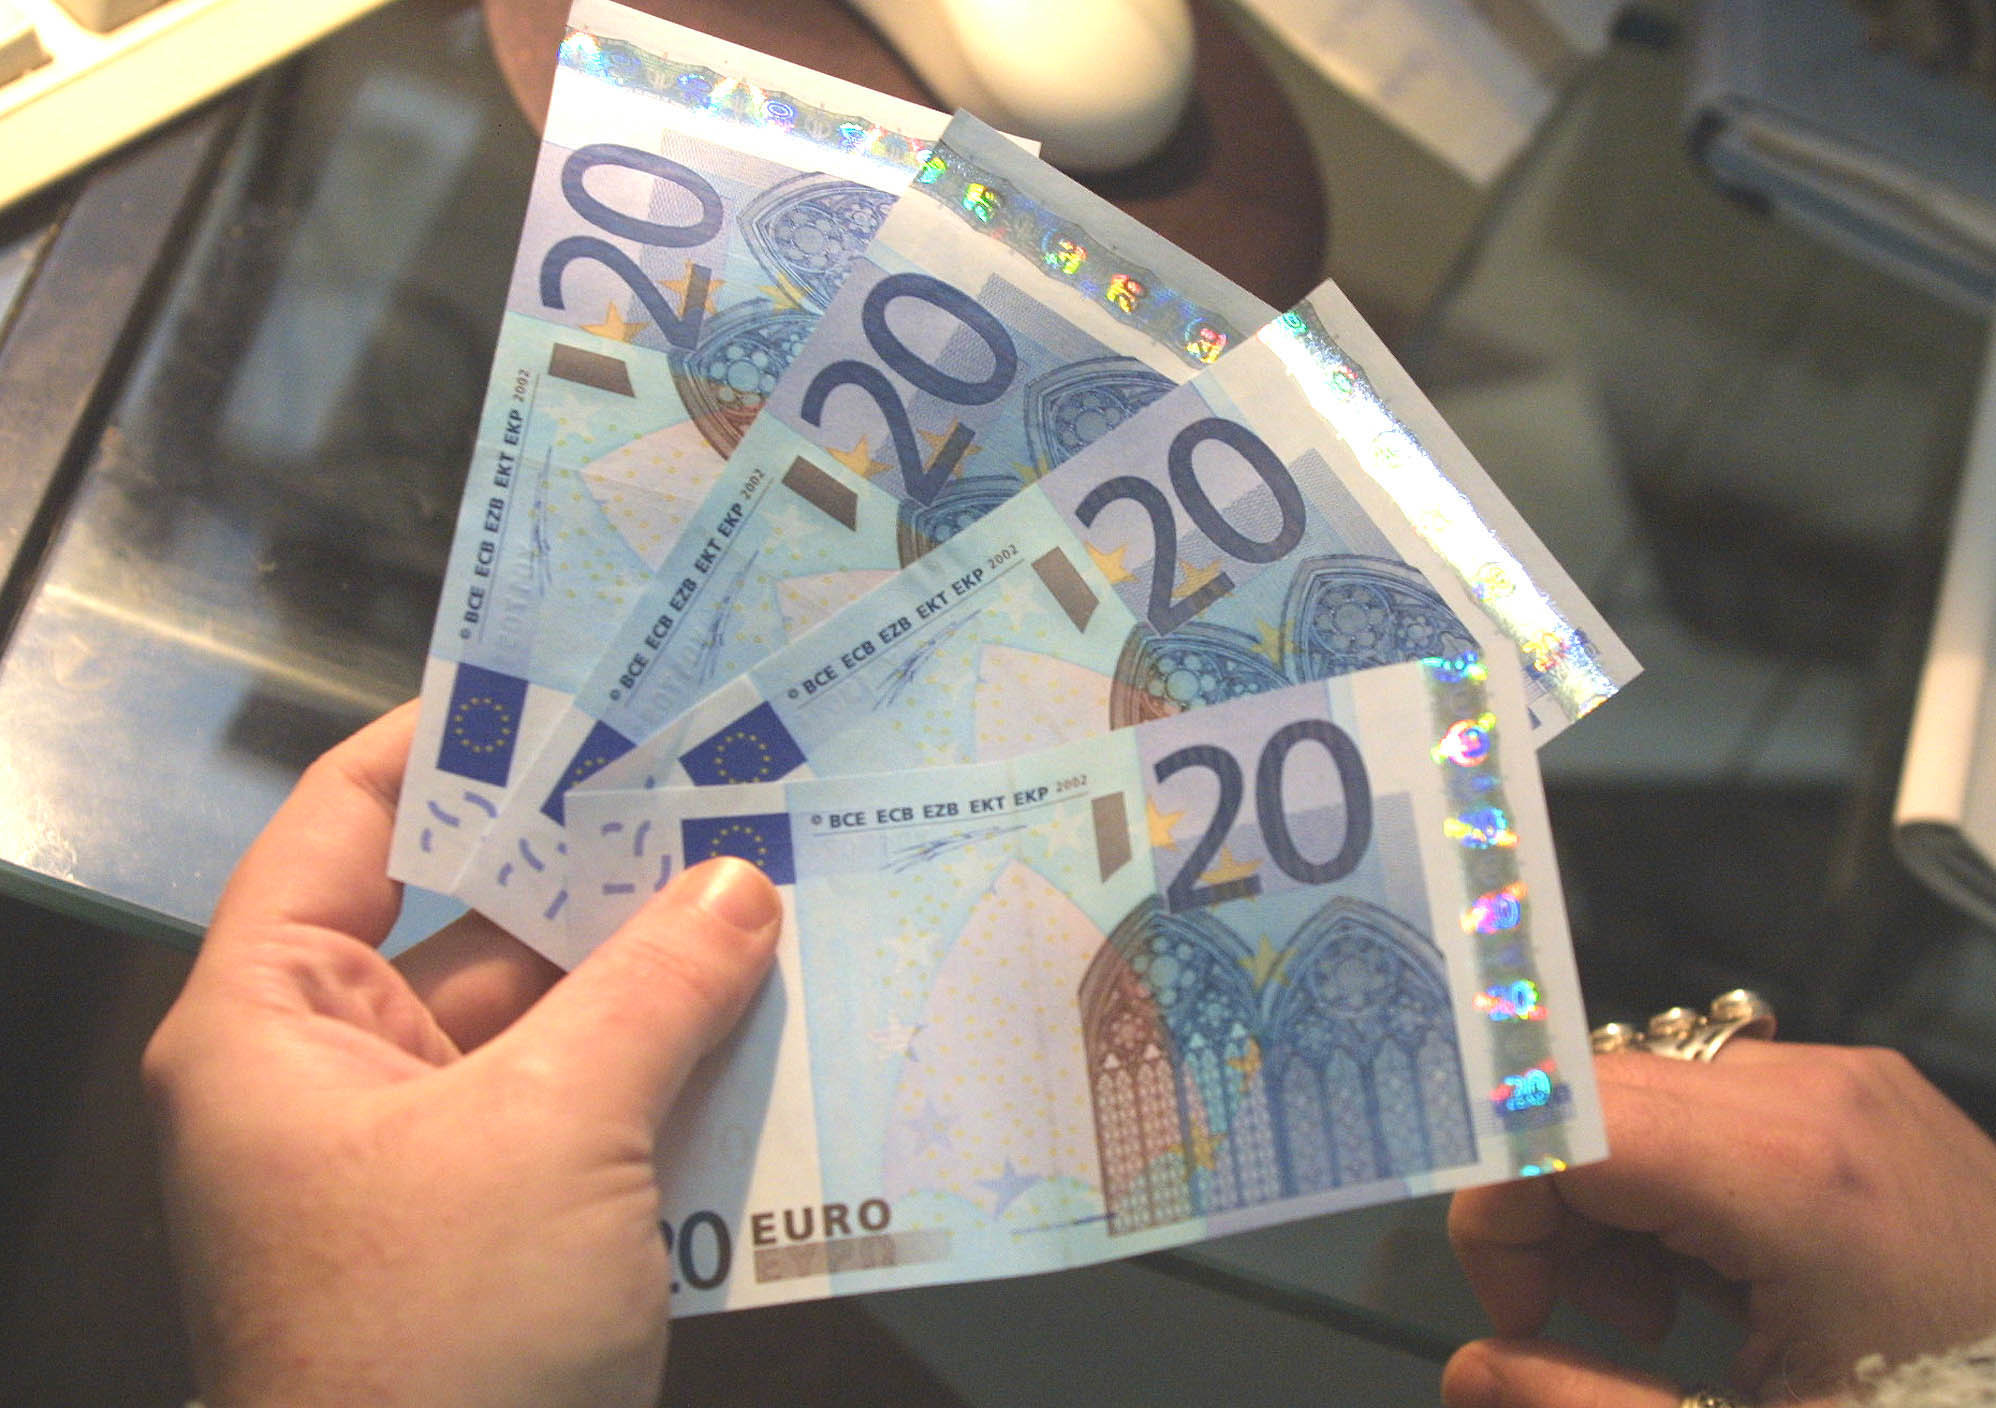 Η συνάντηση Μέρκελ – Σαρκοζί ενισχύει το ευρώ